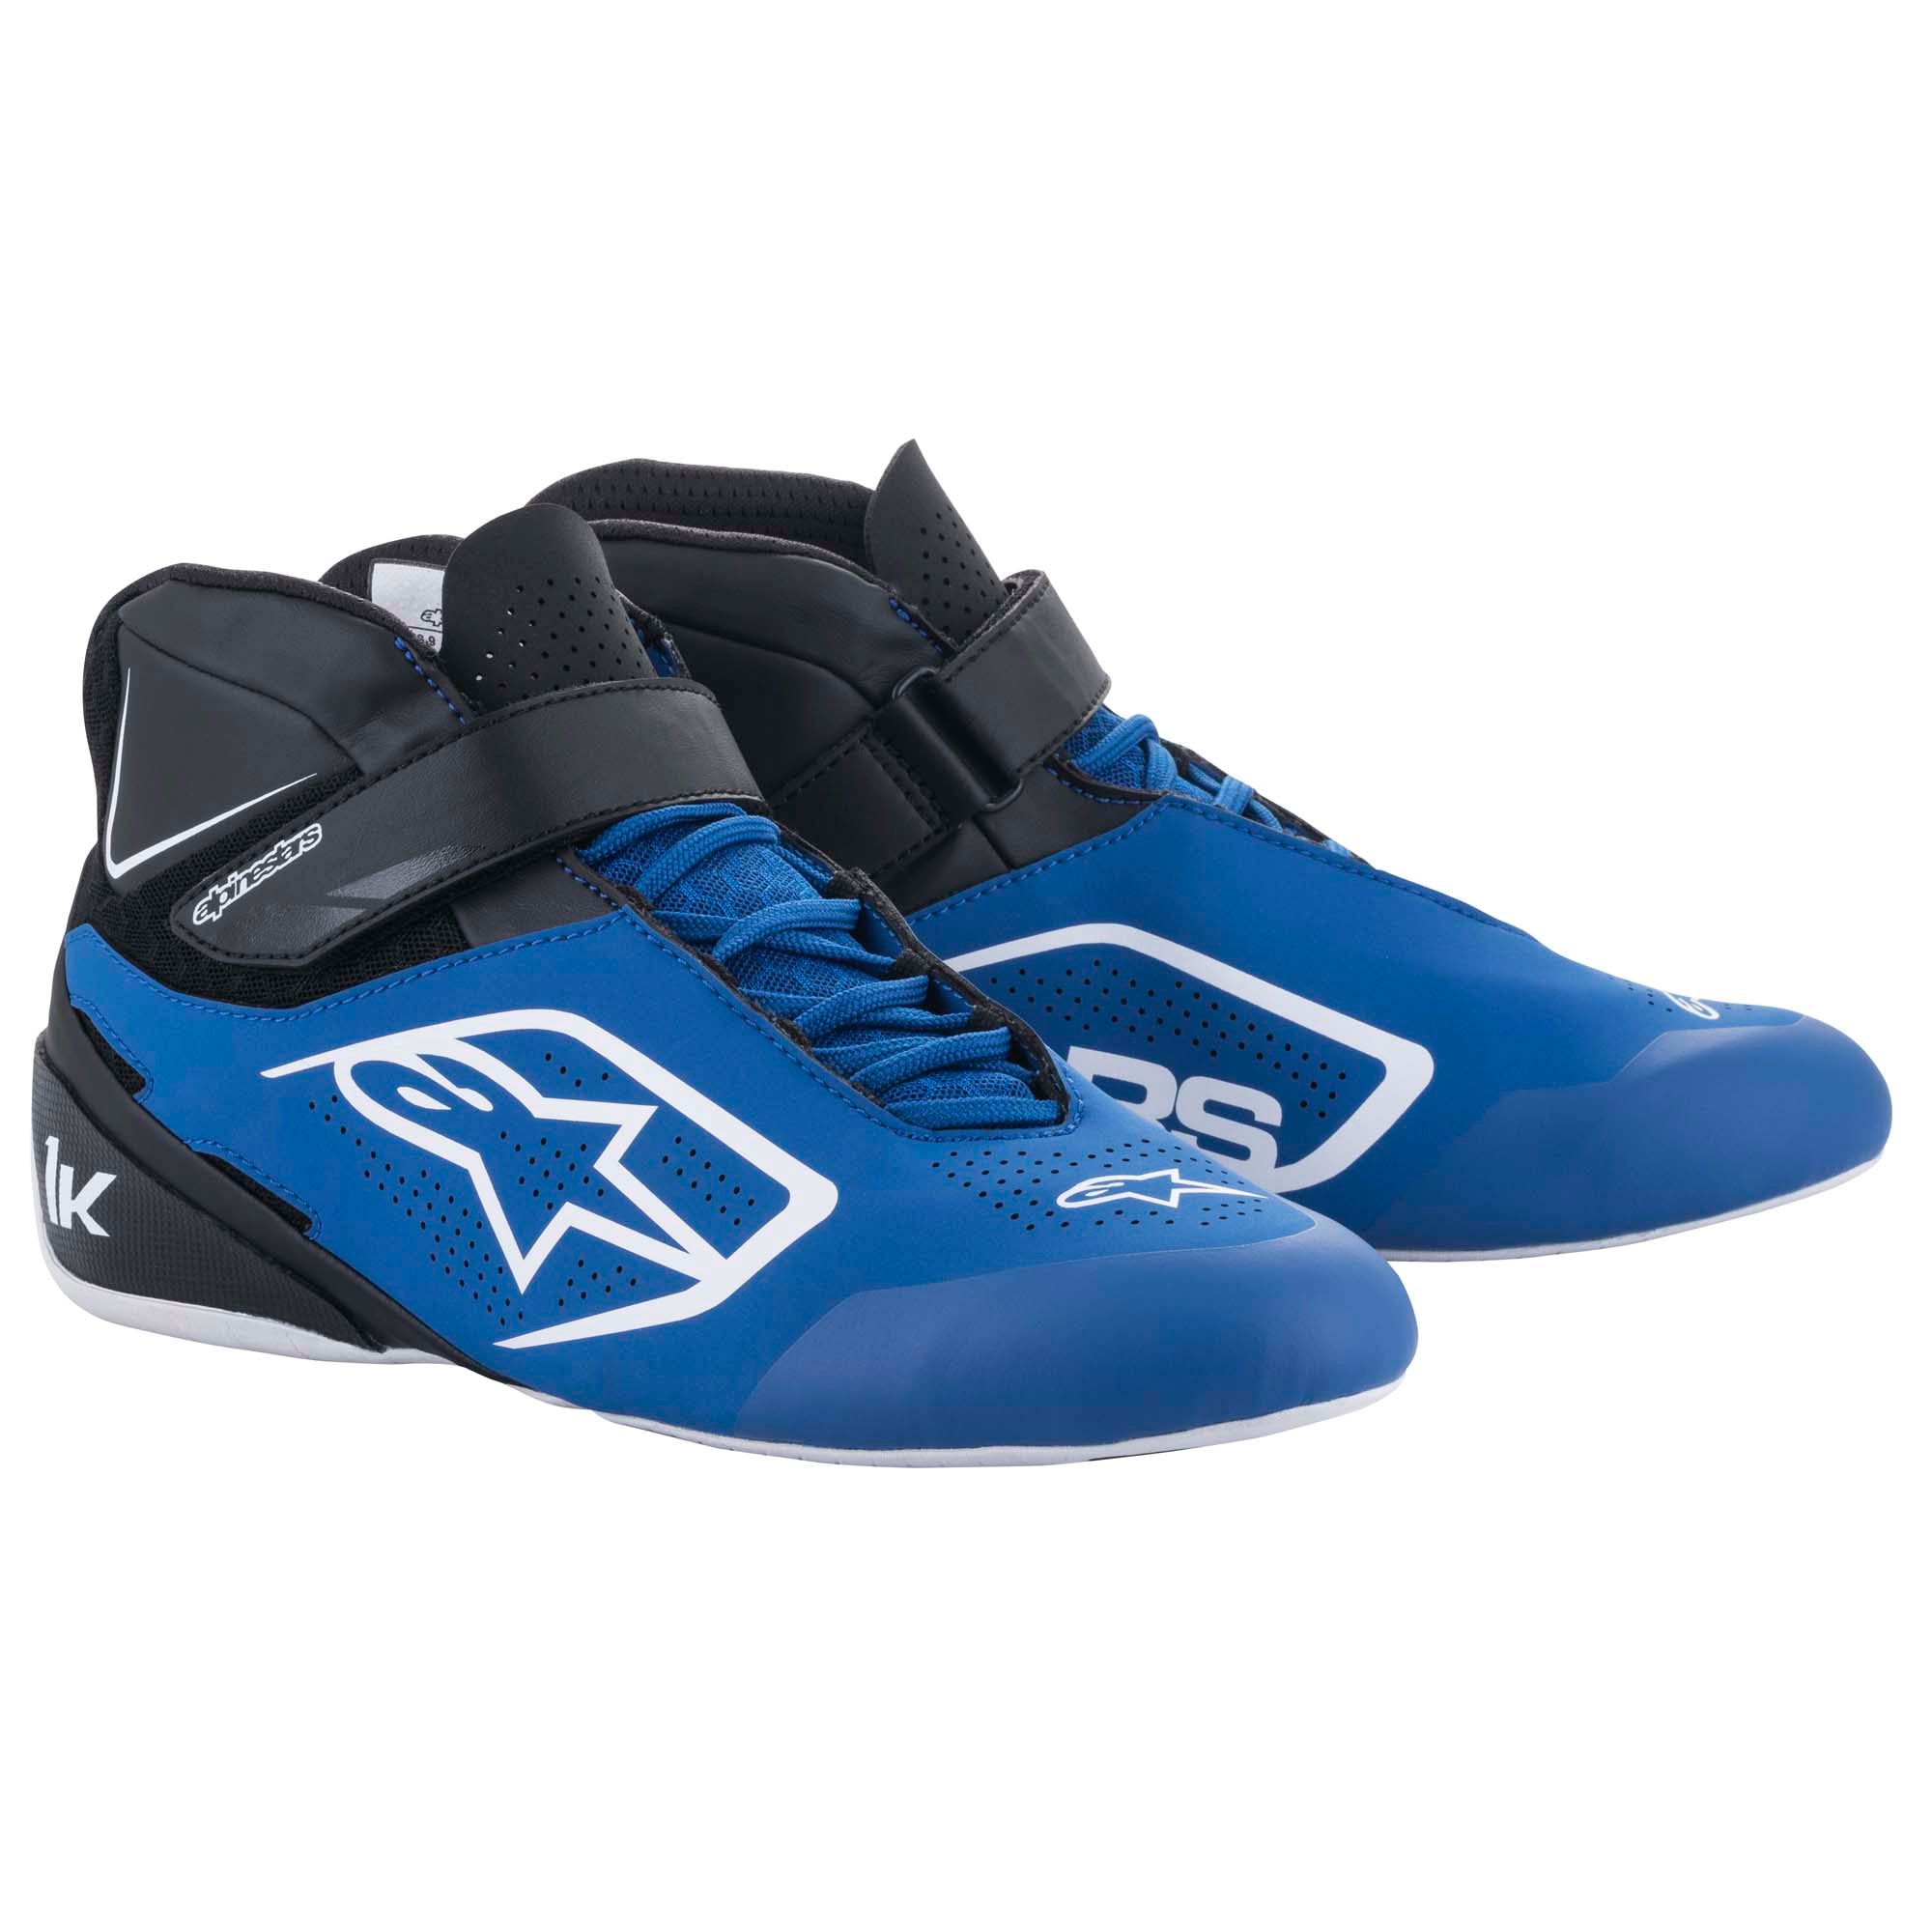 Alpinestars Tech 1-K v2 Karting Shoes - Youth Sizes